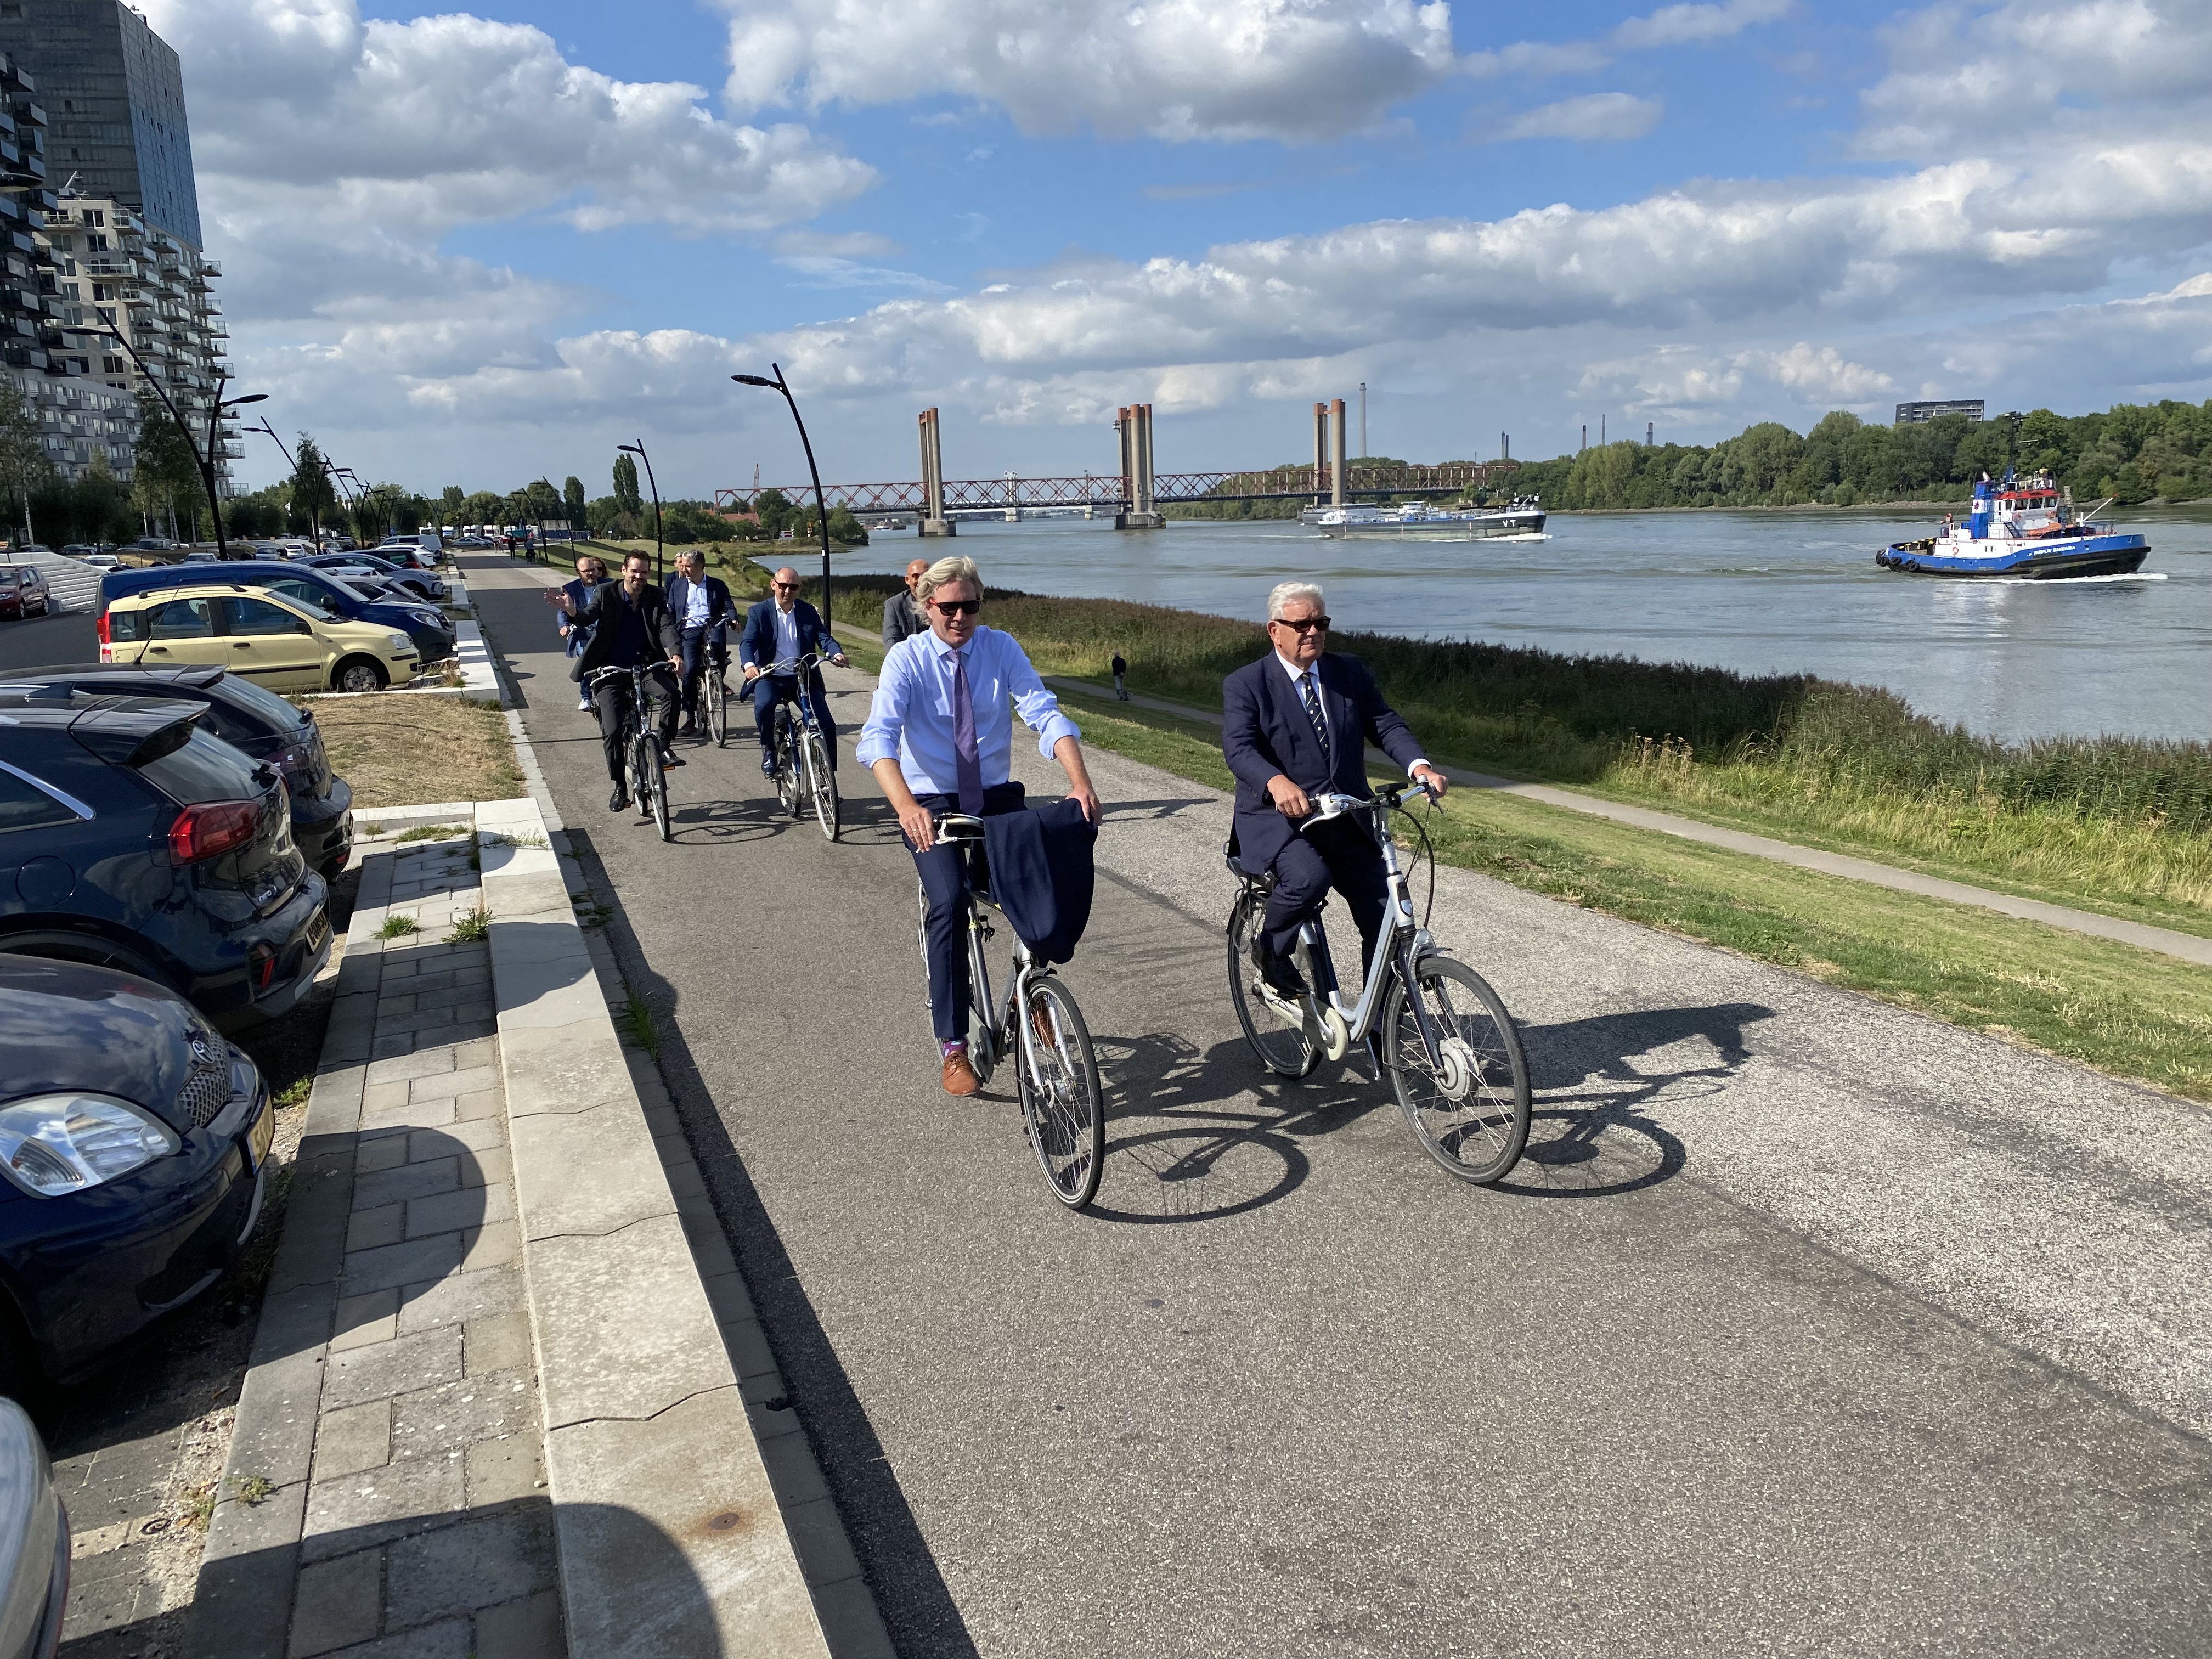 Burgemeester Foort van Oosten en Burgemeester Jan van Zanen op de fiets in Nissewaard